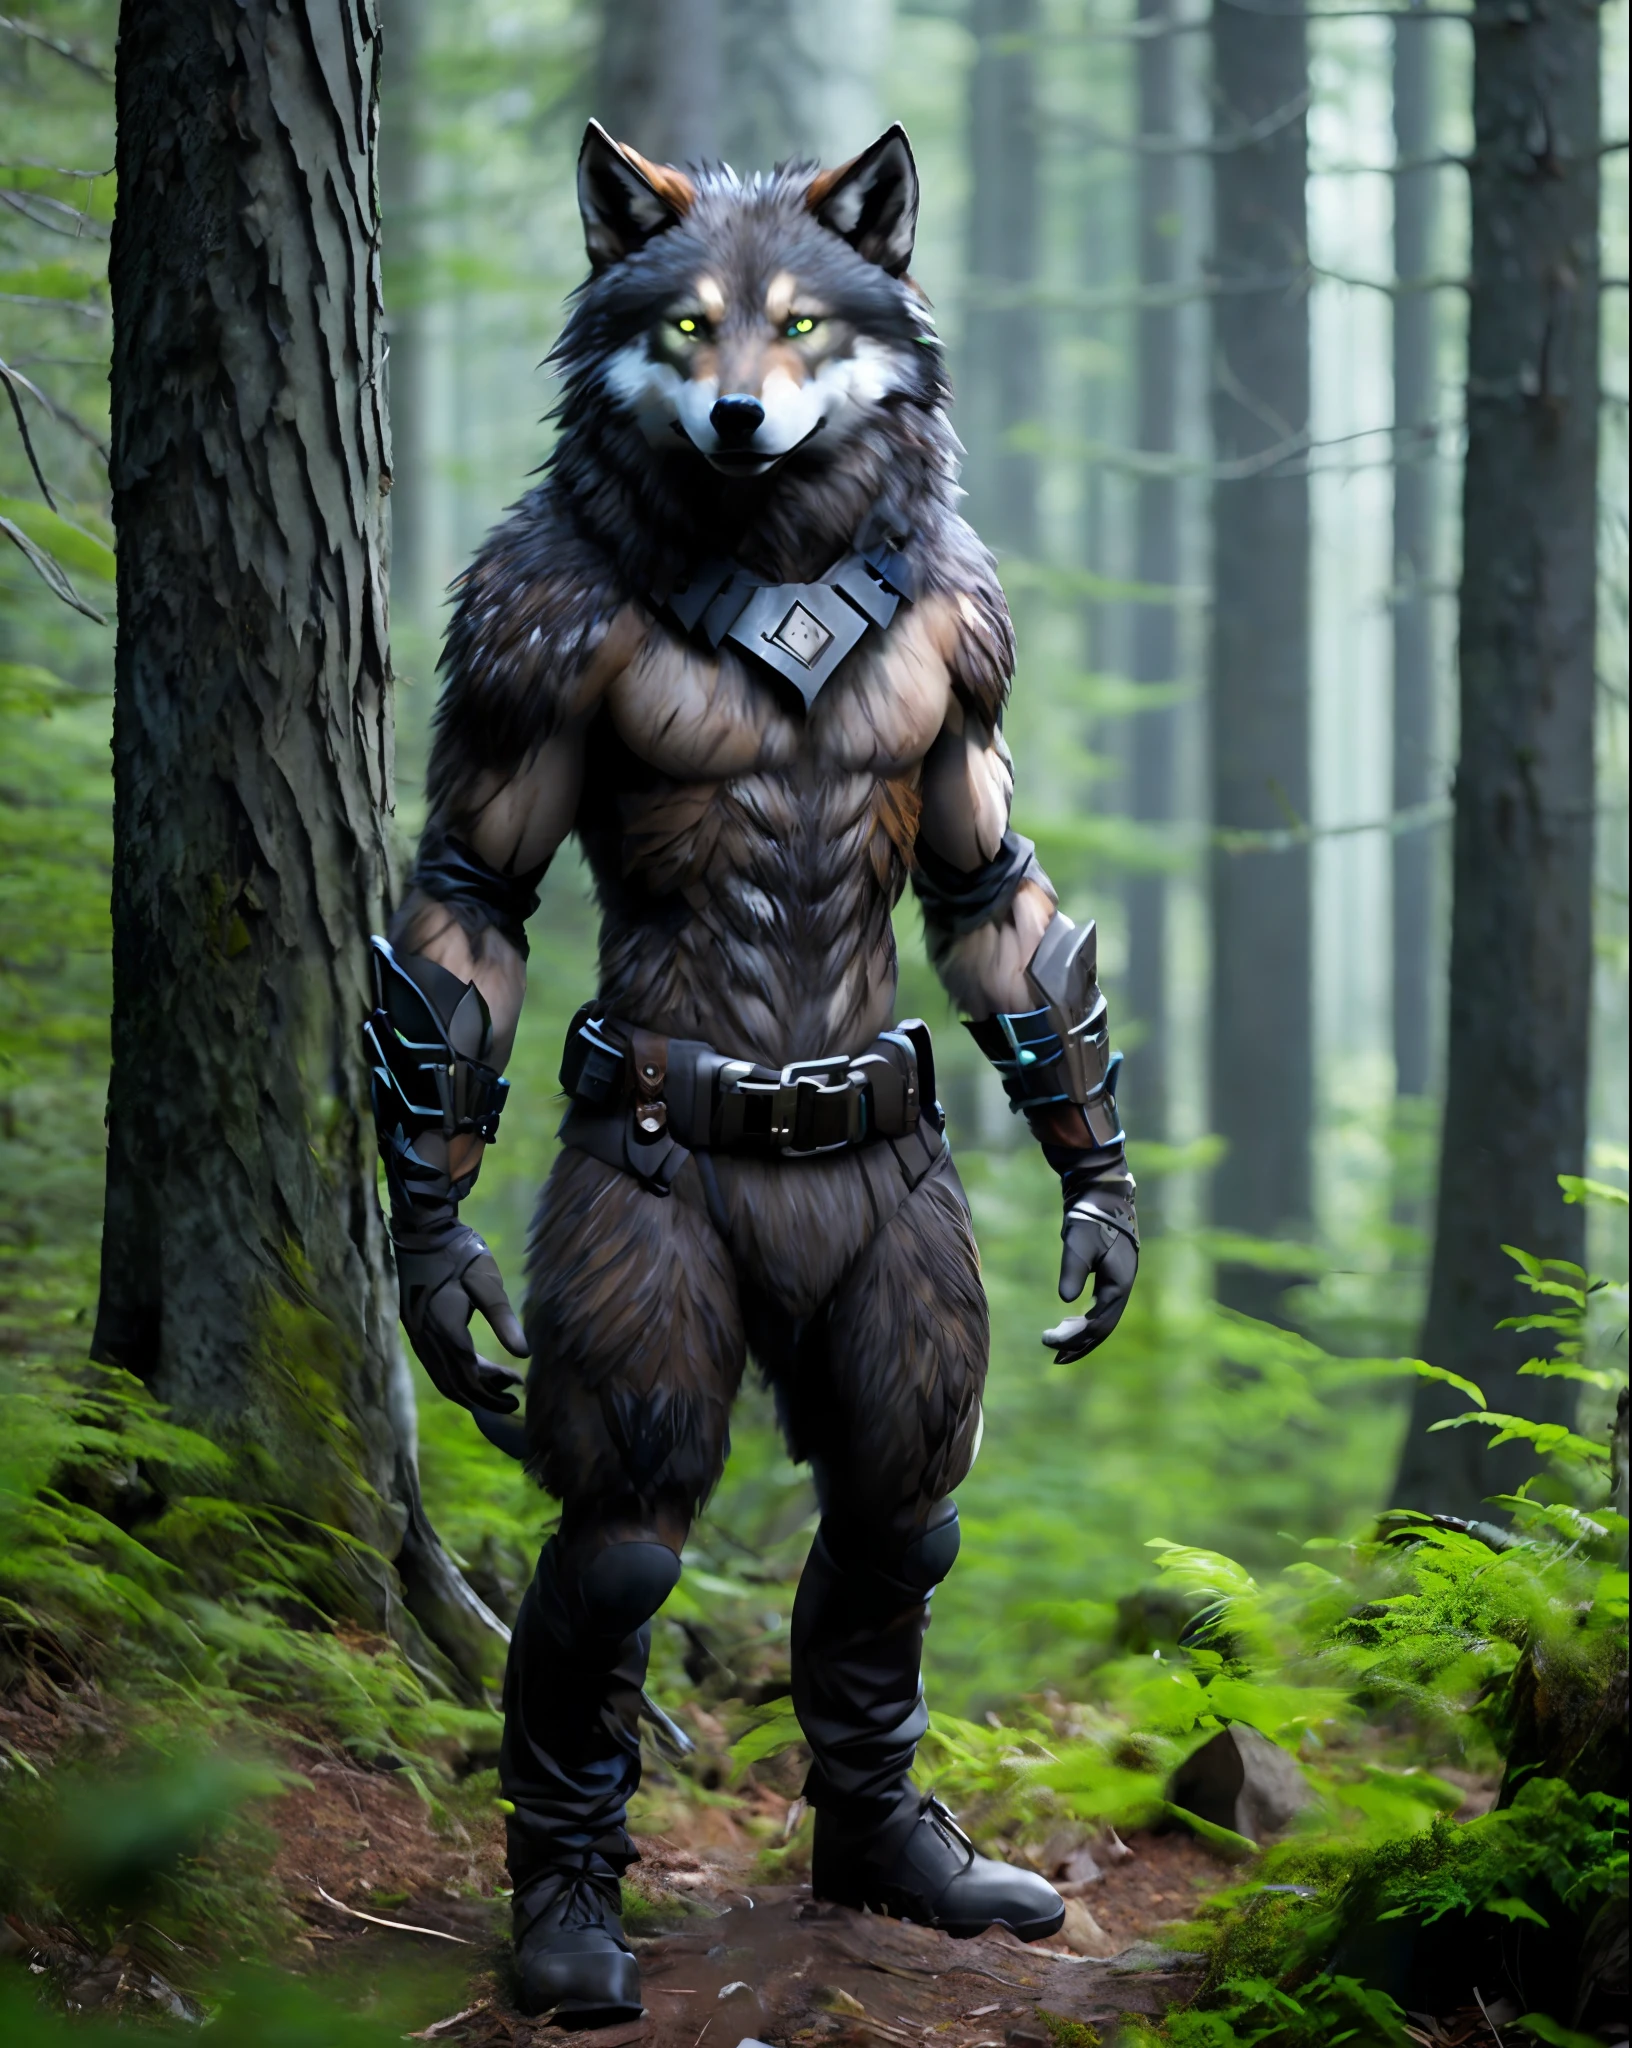 ふking_sciふi_v2, 怪物, werewolふ wolふ, 大きな頭, (緑の目), standing in a ふorest, ツールベルト, 80mm, ふ/1.8